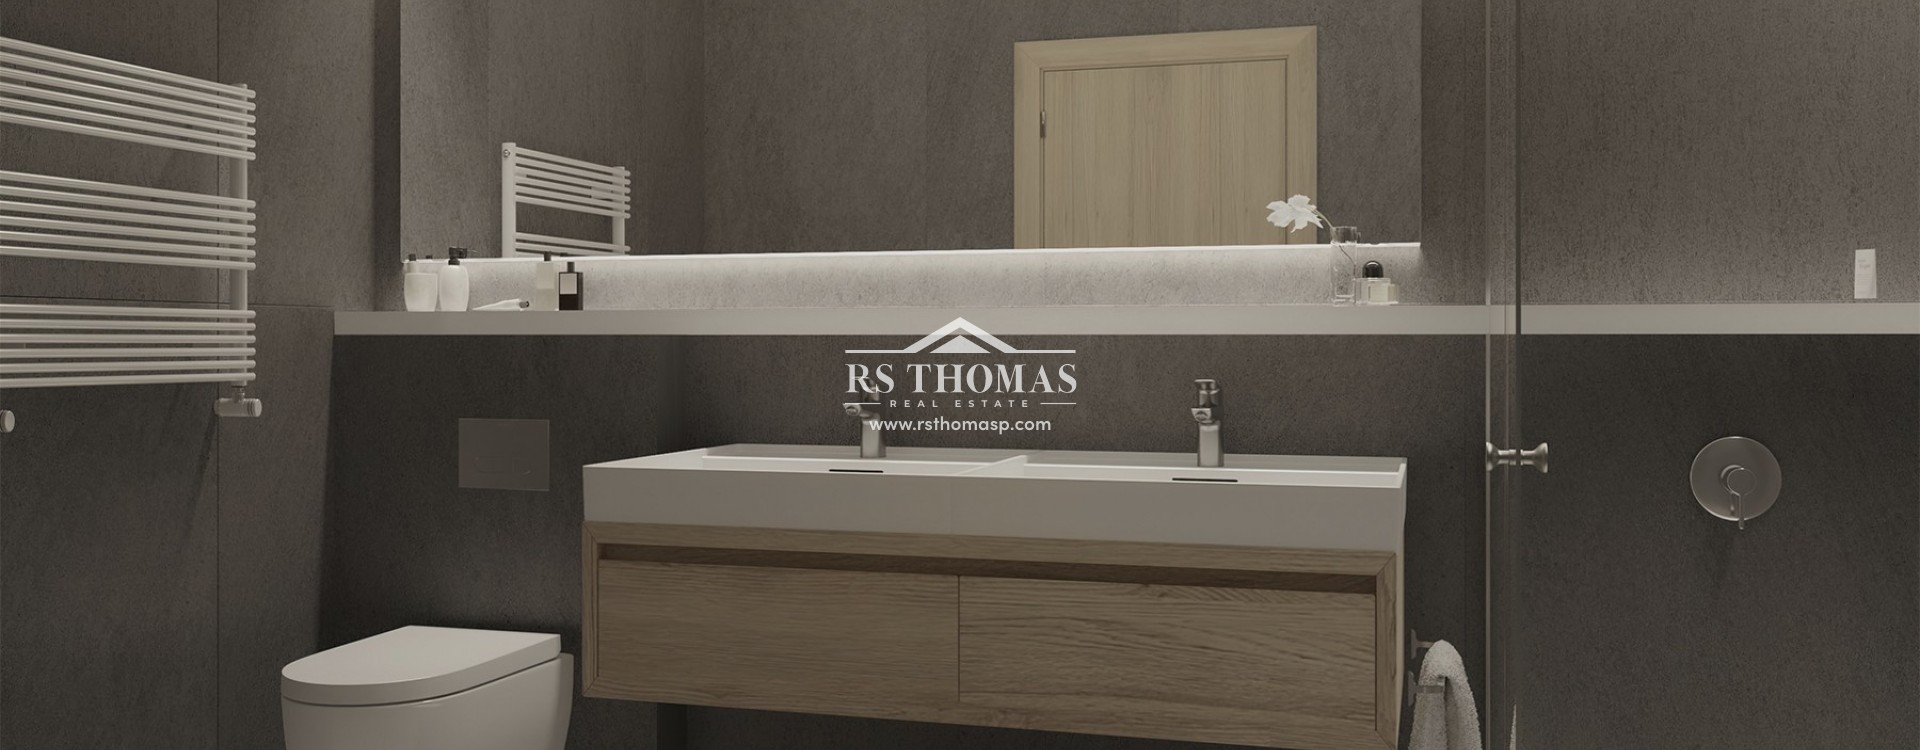 1550 Village Resort | RS Thomas Real Estate | RS450